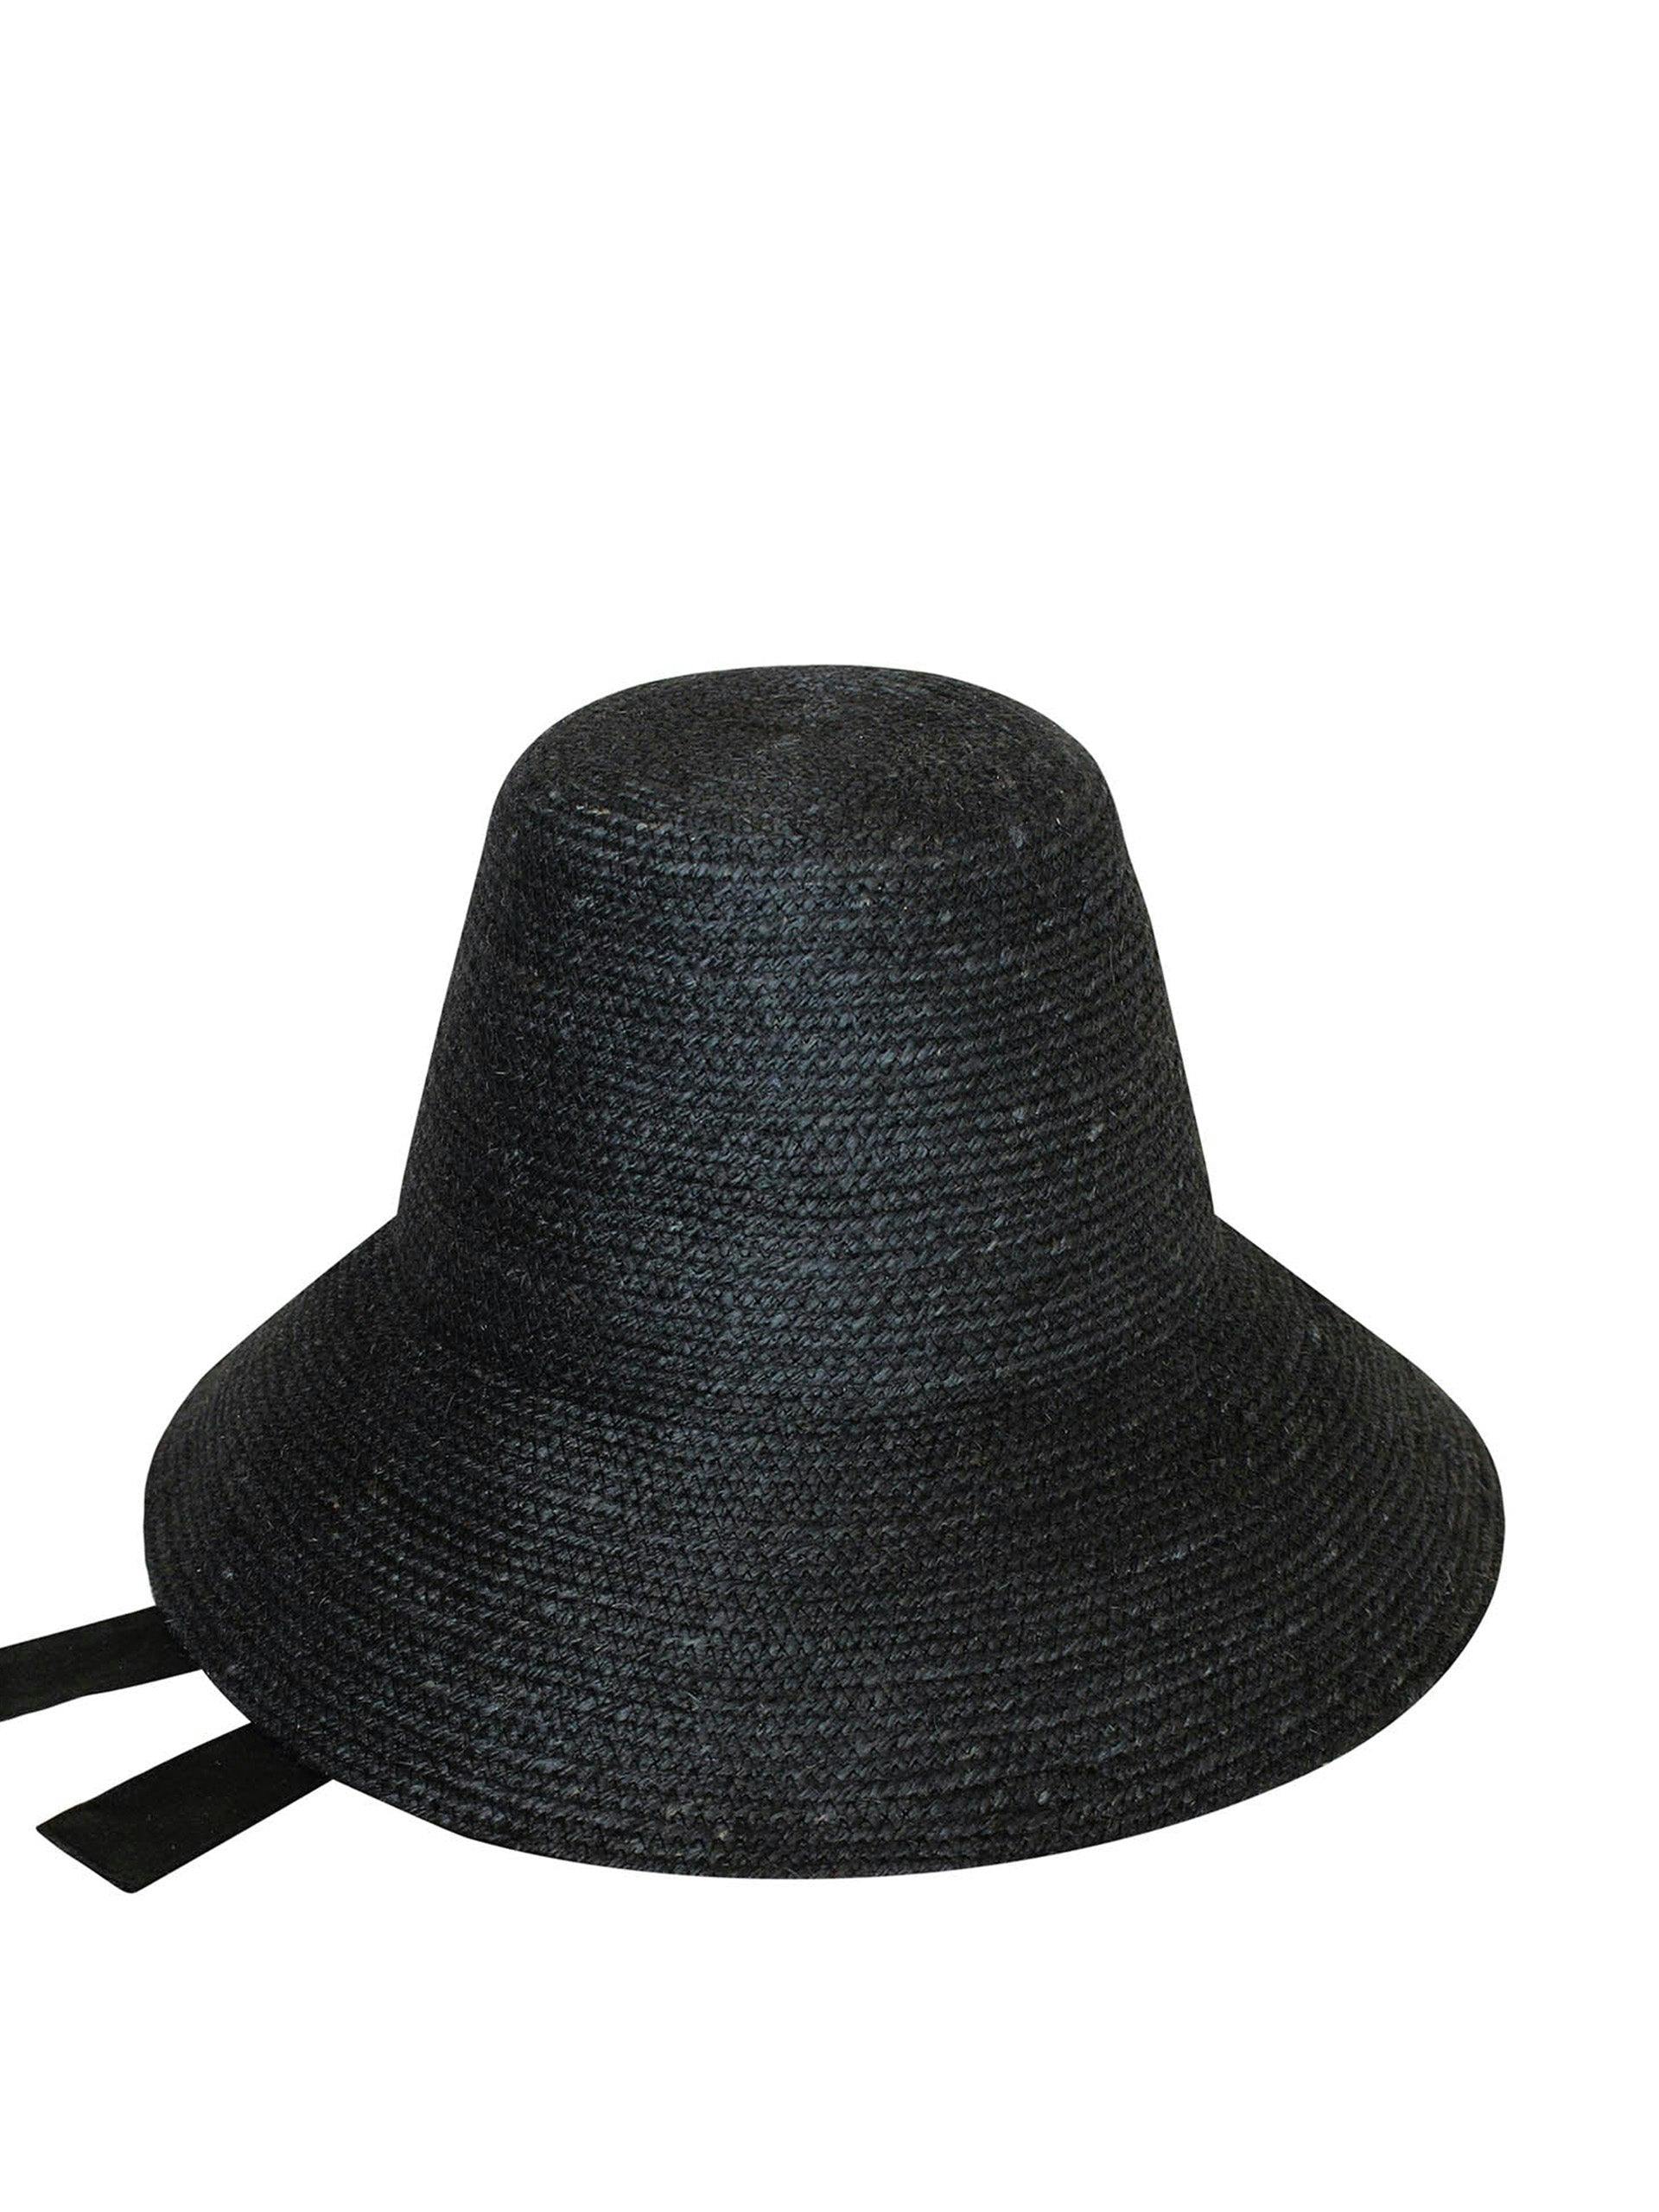 Meg jute straw hat in black